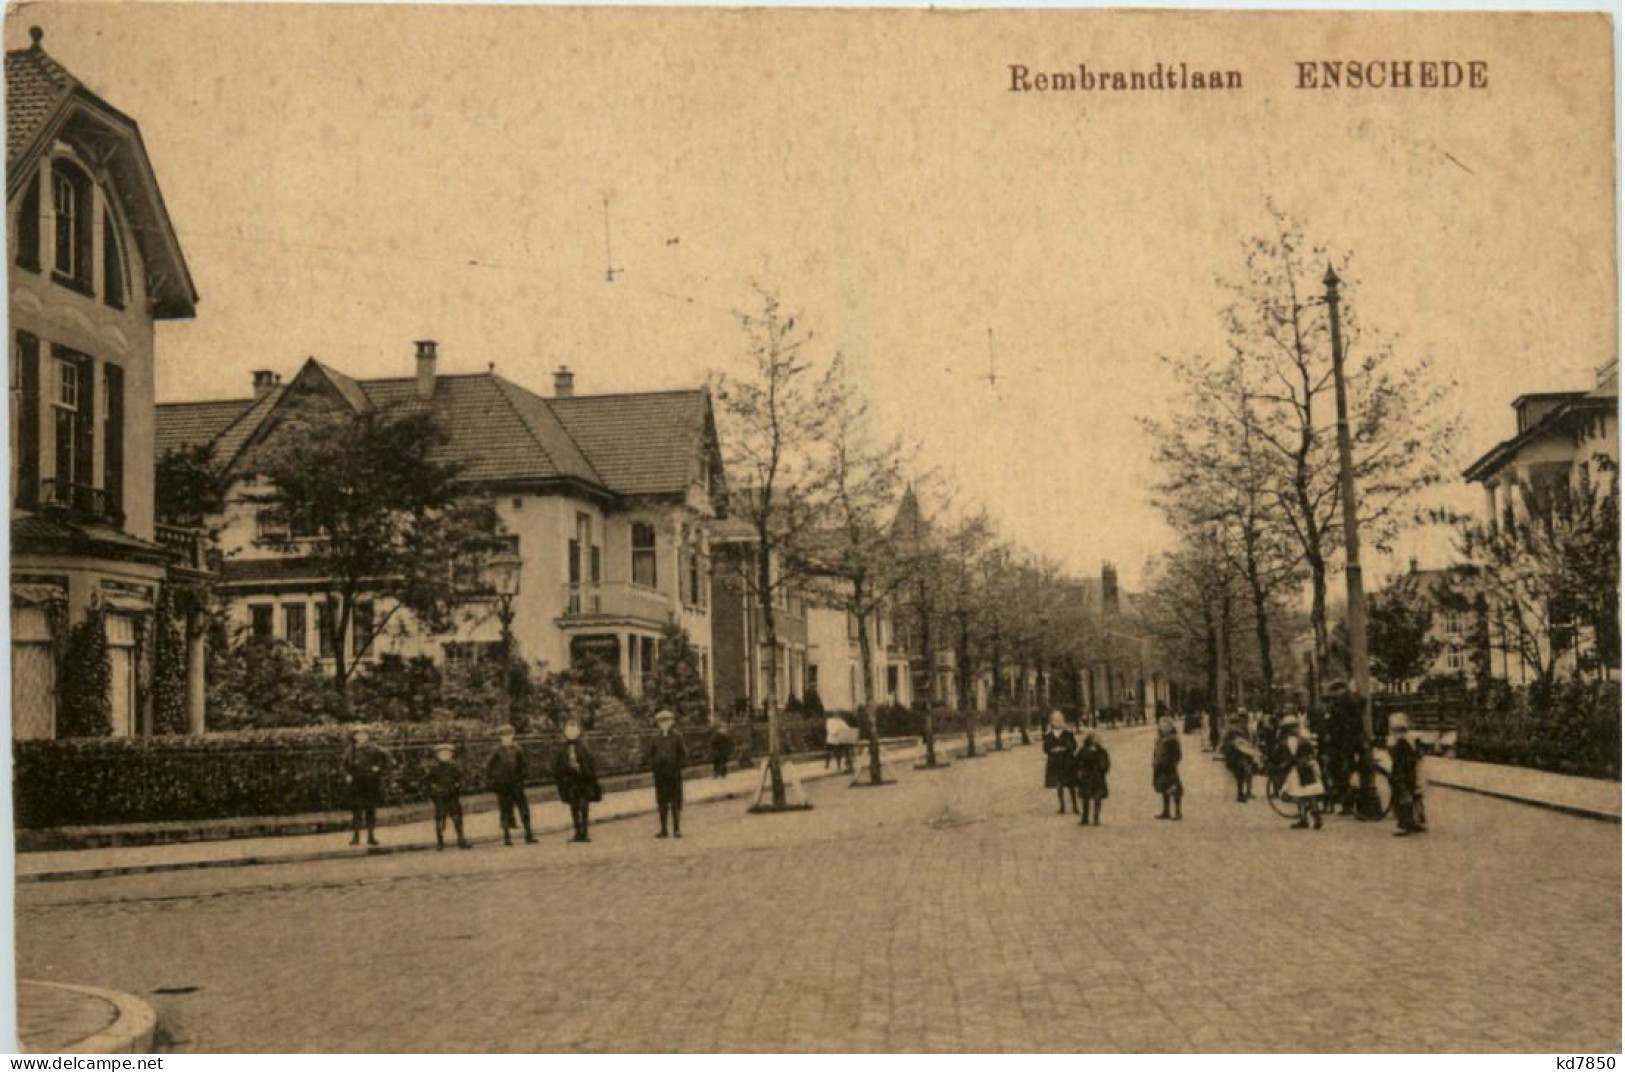 Enschede - Rembrandtlaan - Enschede